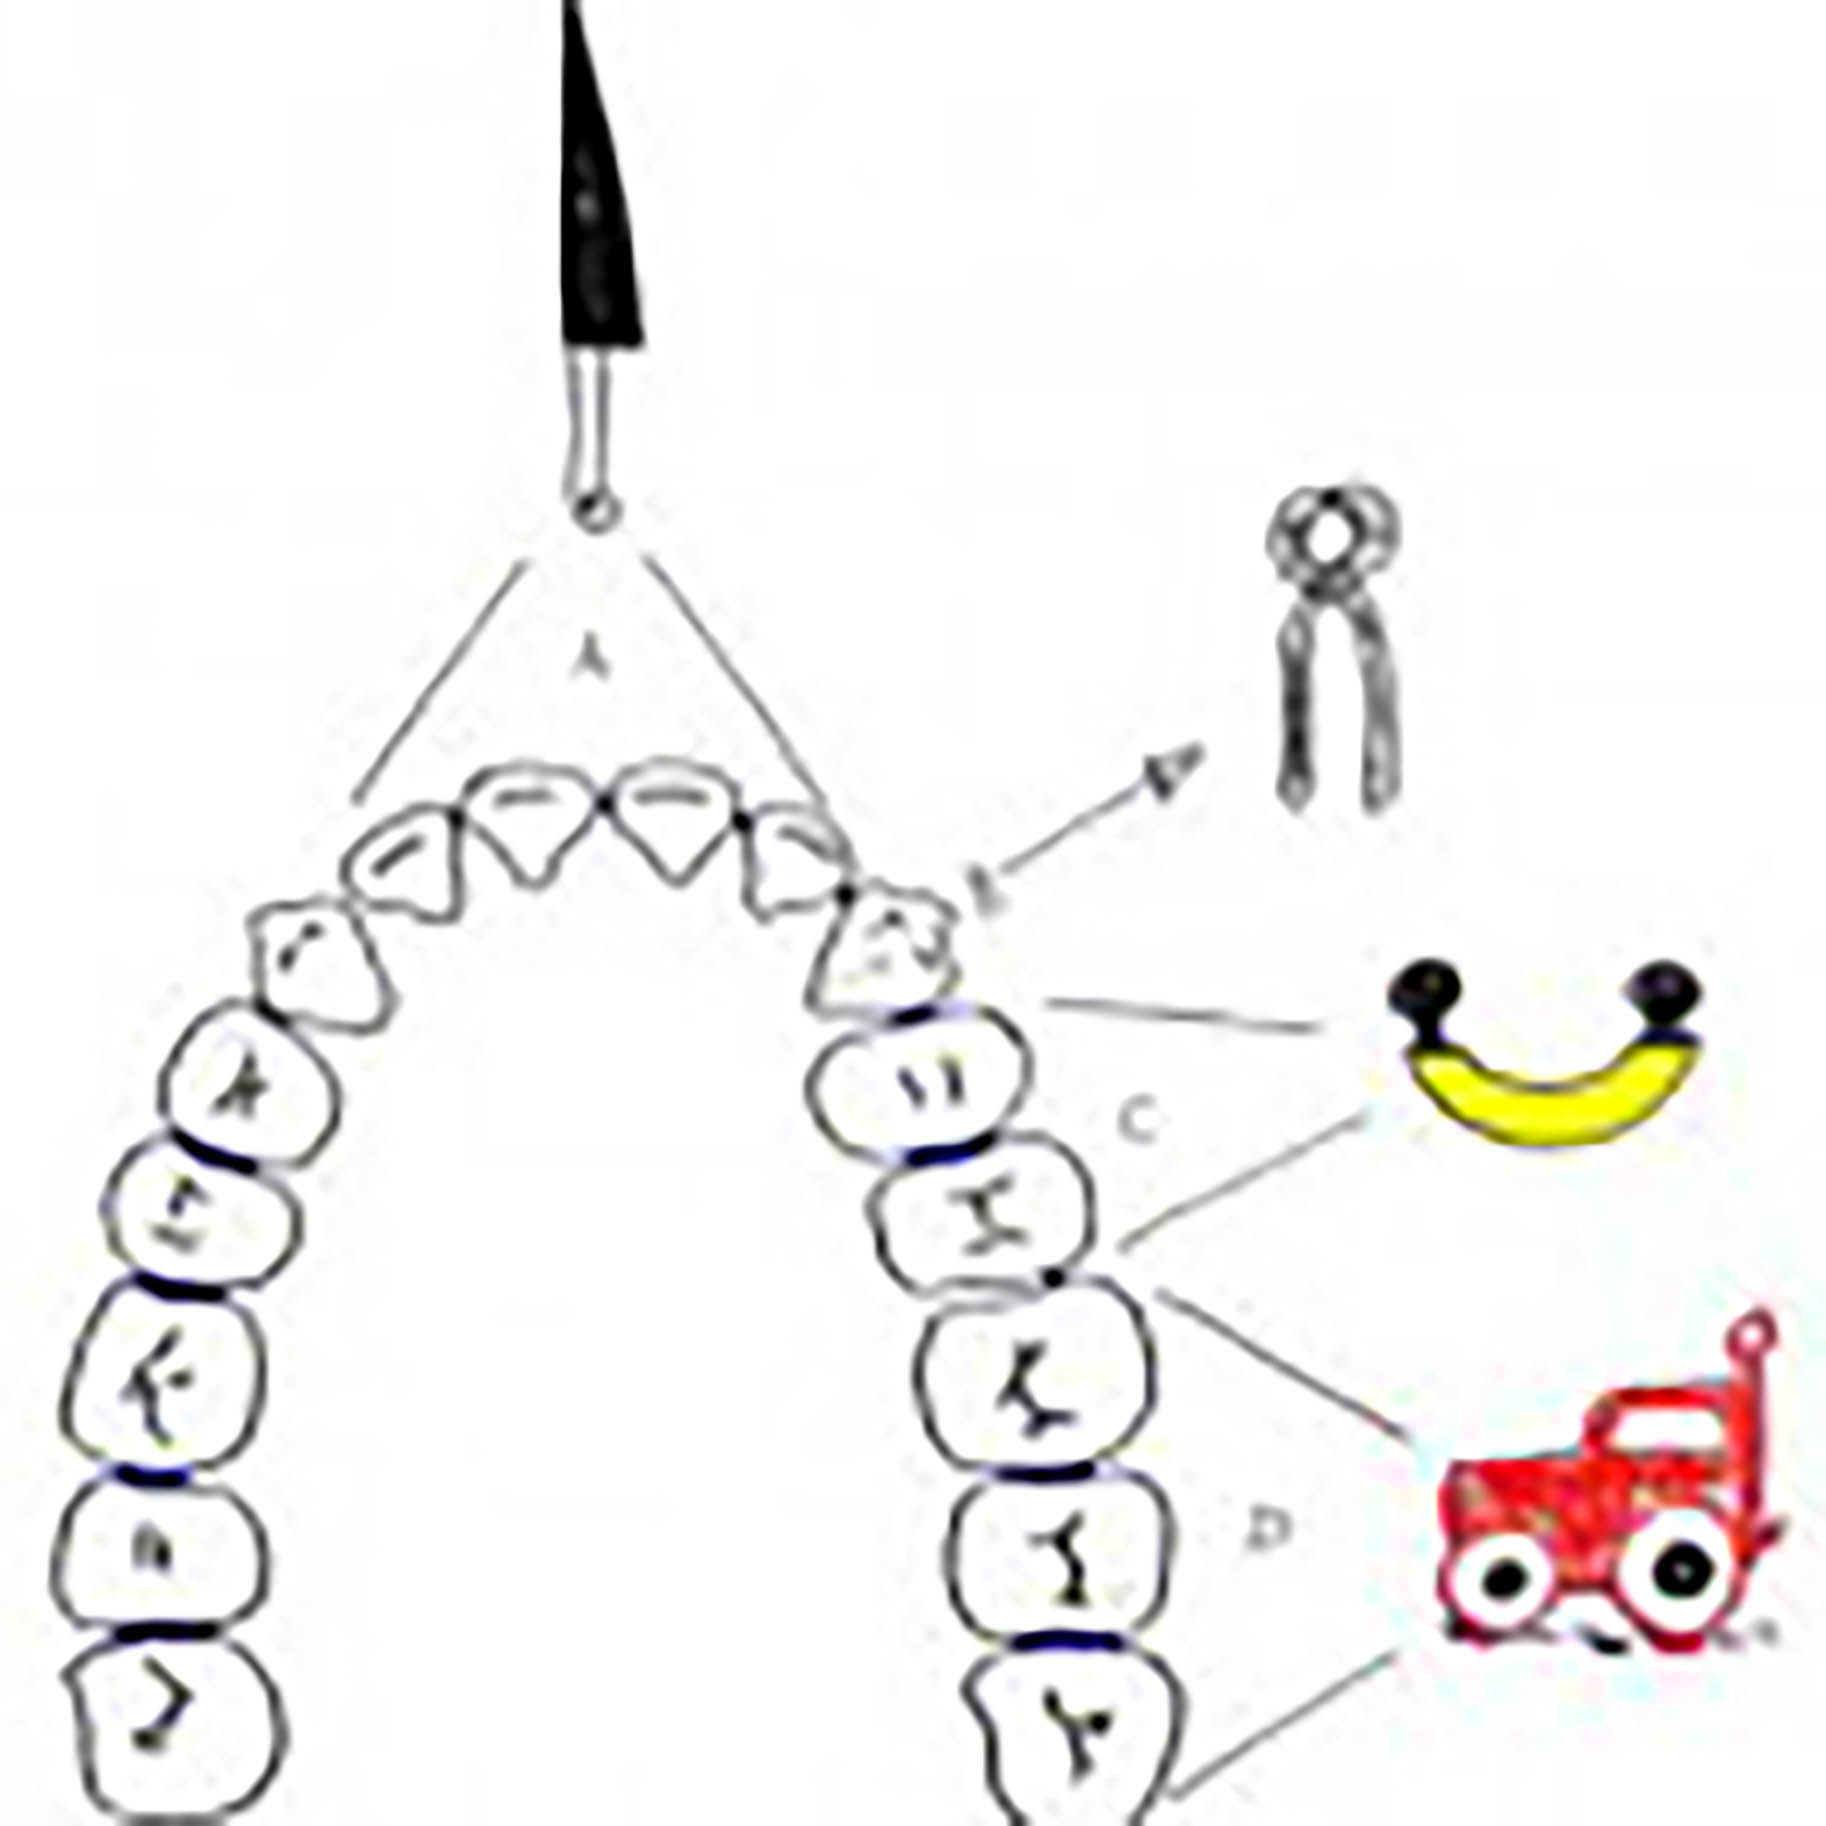 immagine mostra la funzione dei diversi denti